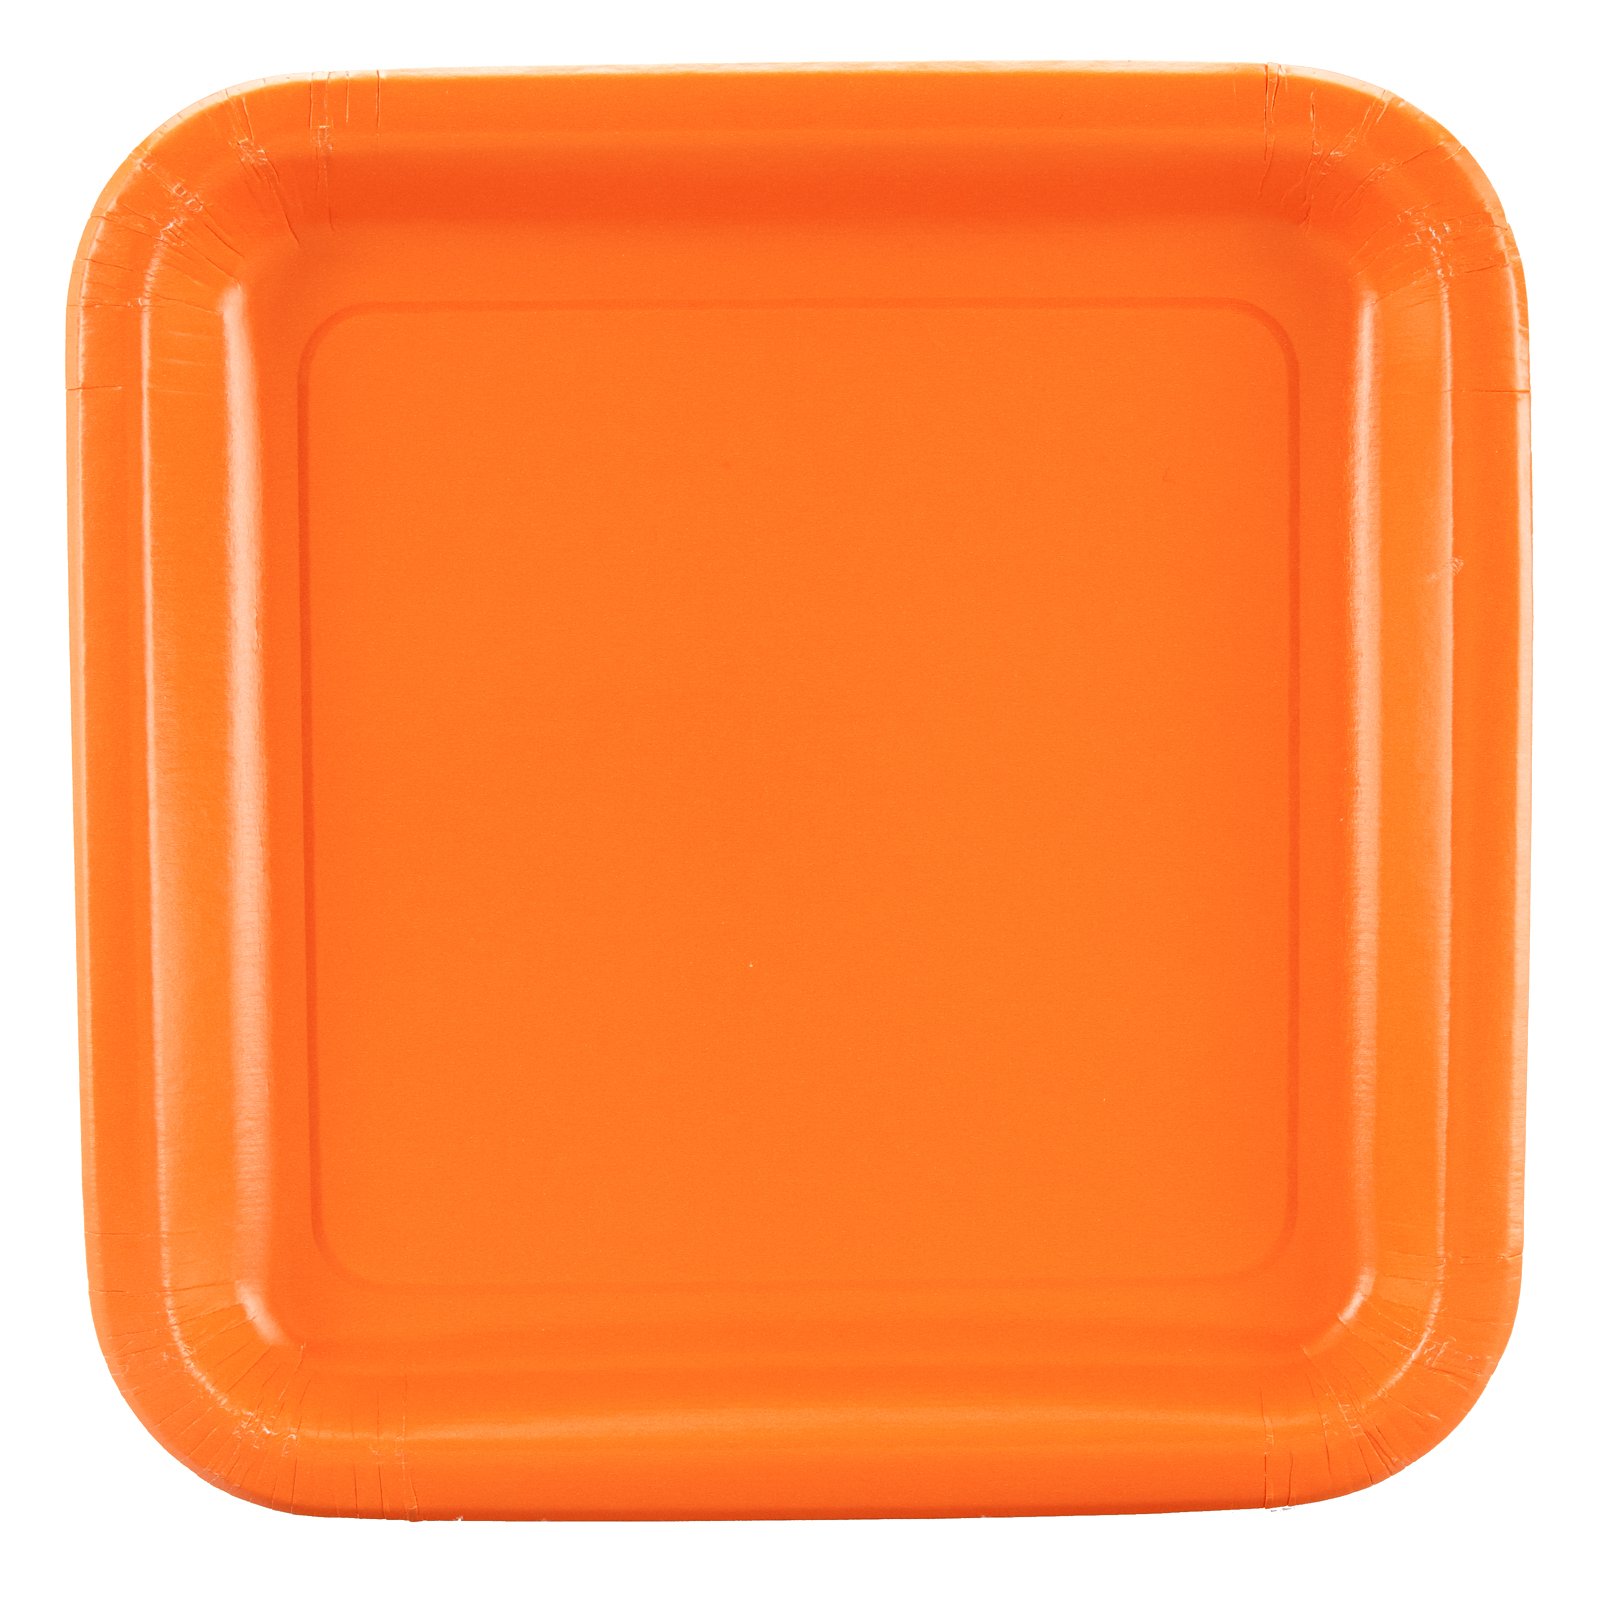 Orange Square Dinner Plates (12 count)